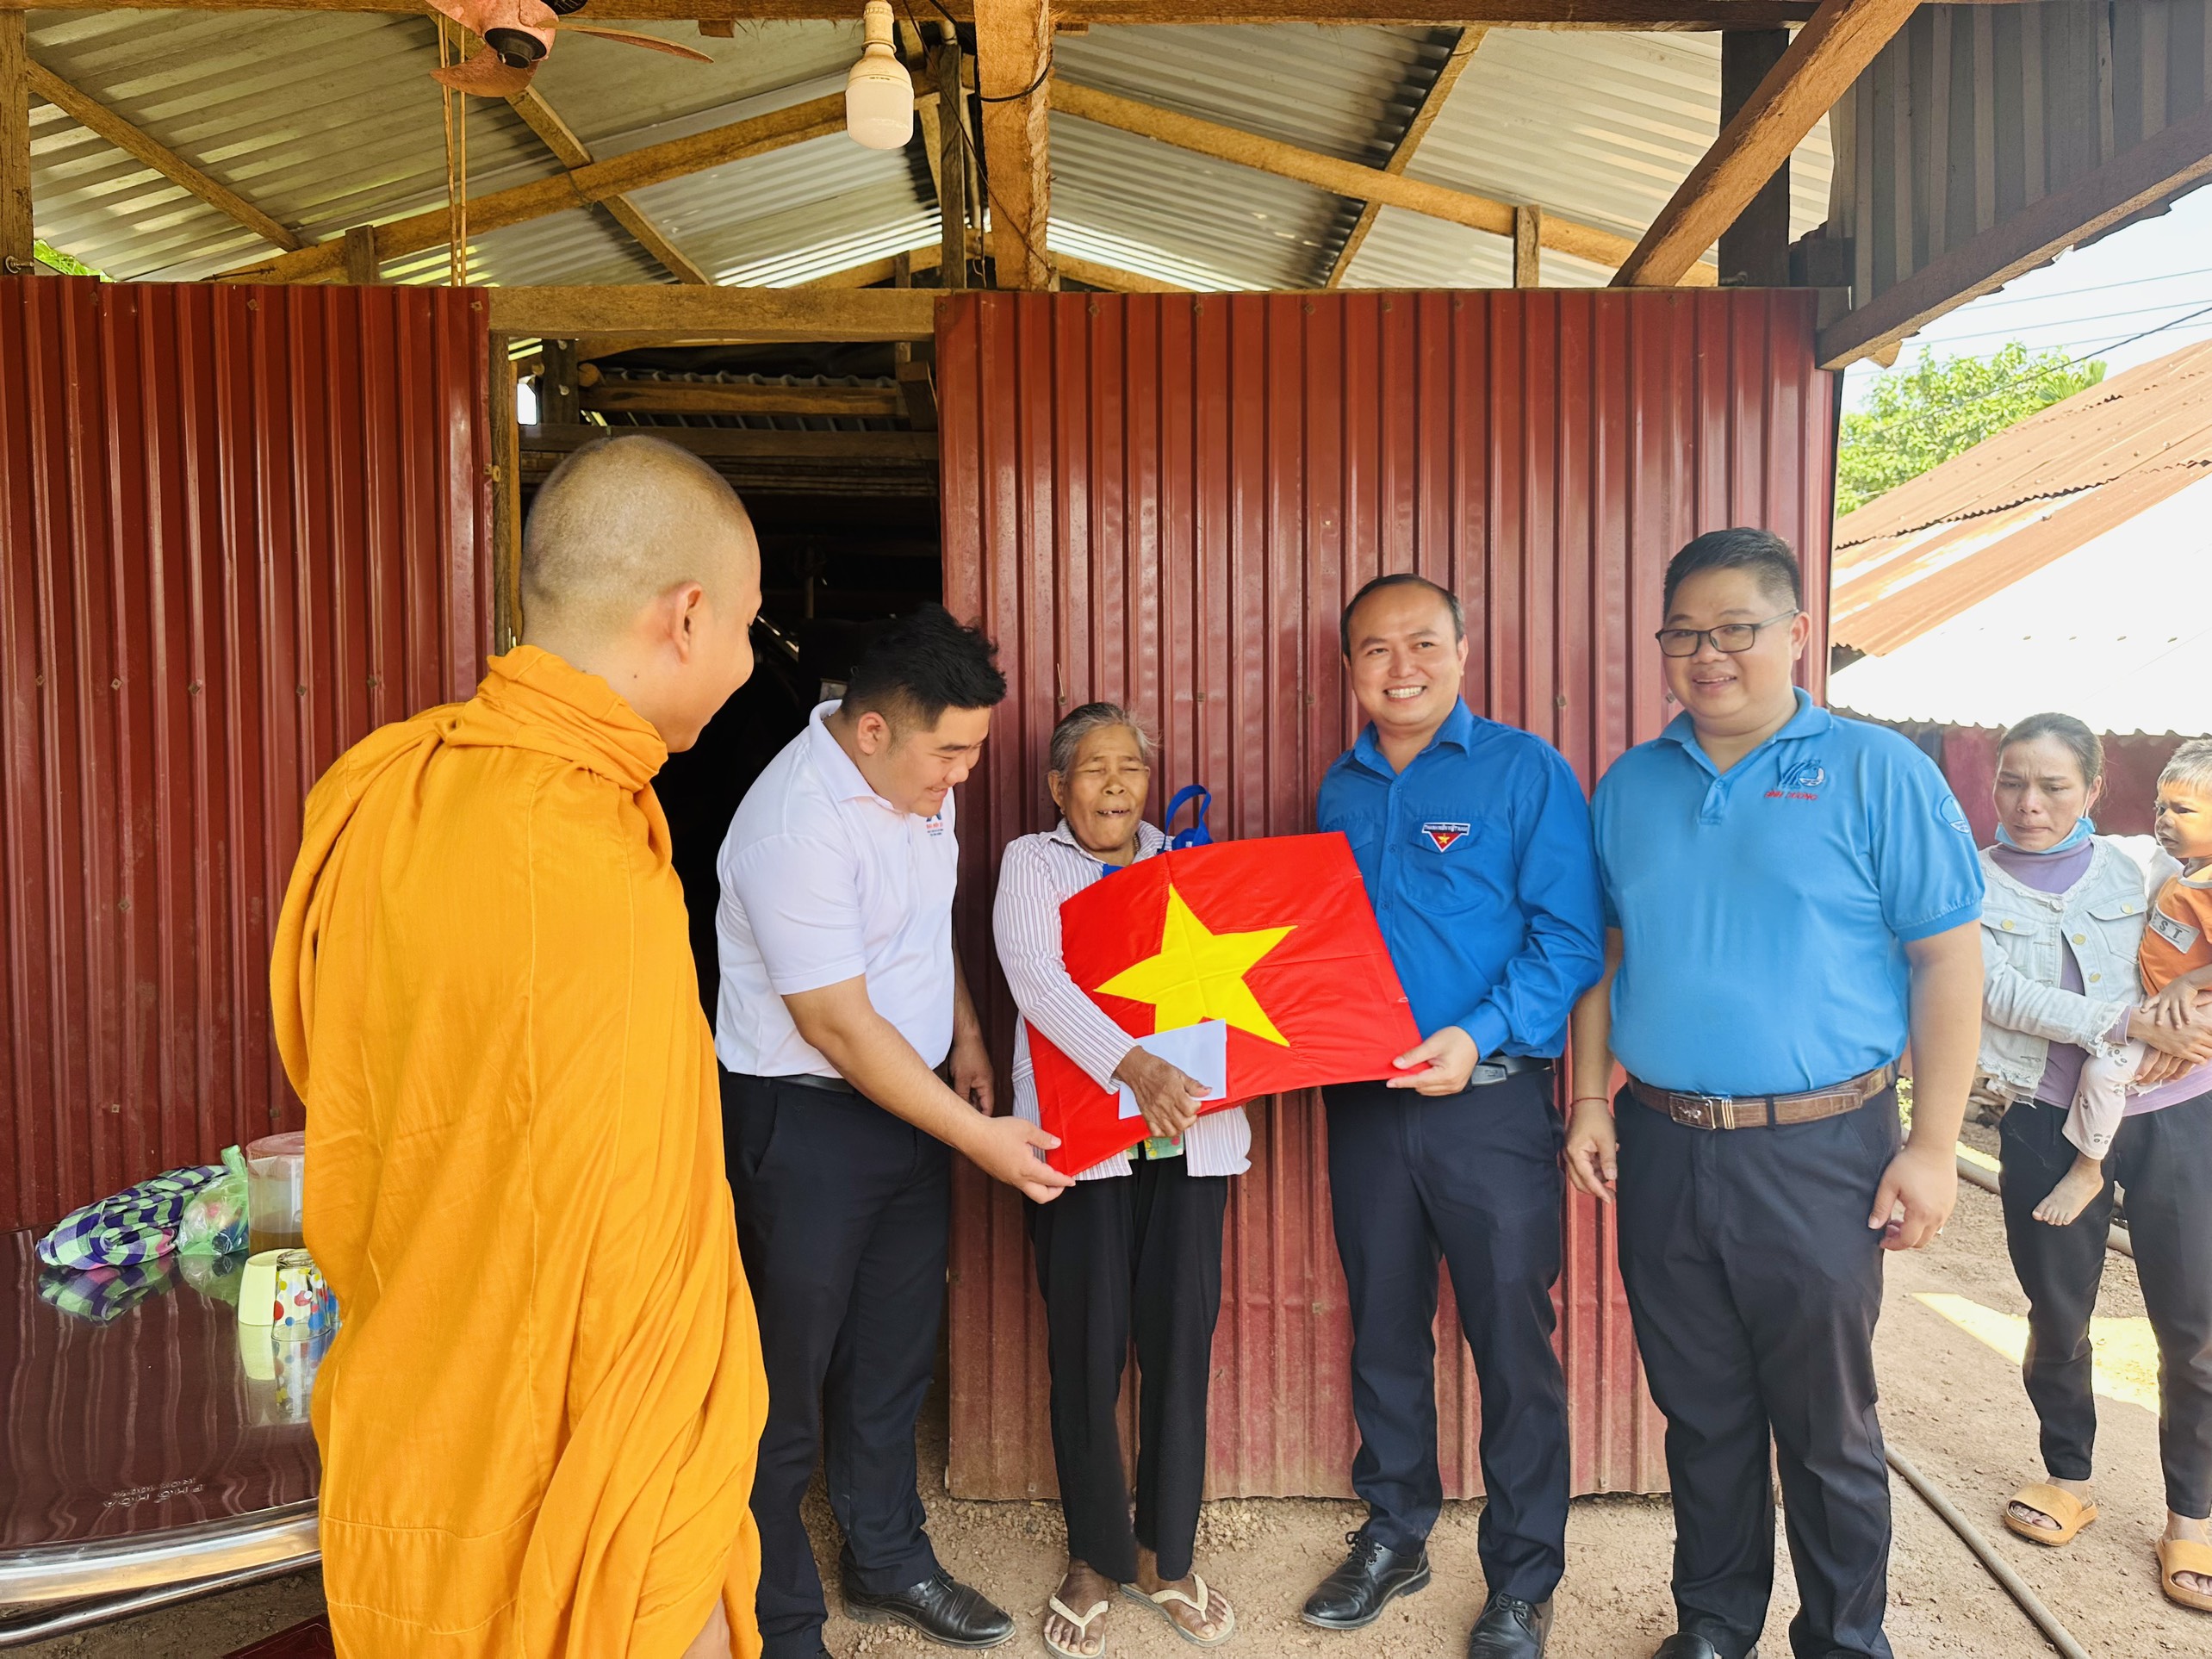 Huyện đoàn, Hội LHTN Việt Nam huyện tổ chức thăm, tặng cờ tổ quốc cho đồng bào dân tộc Khmer có hoàn cảnh khó khăn tại xã Lộc Khánh, huyện Lộc Ninh, tỉnh Bình Phước.